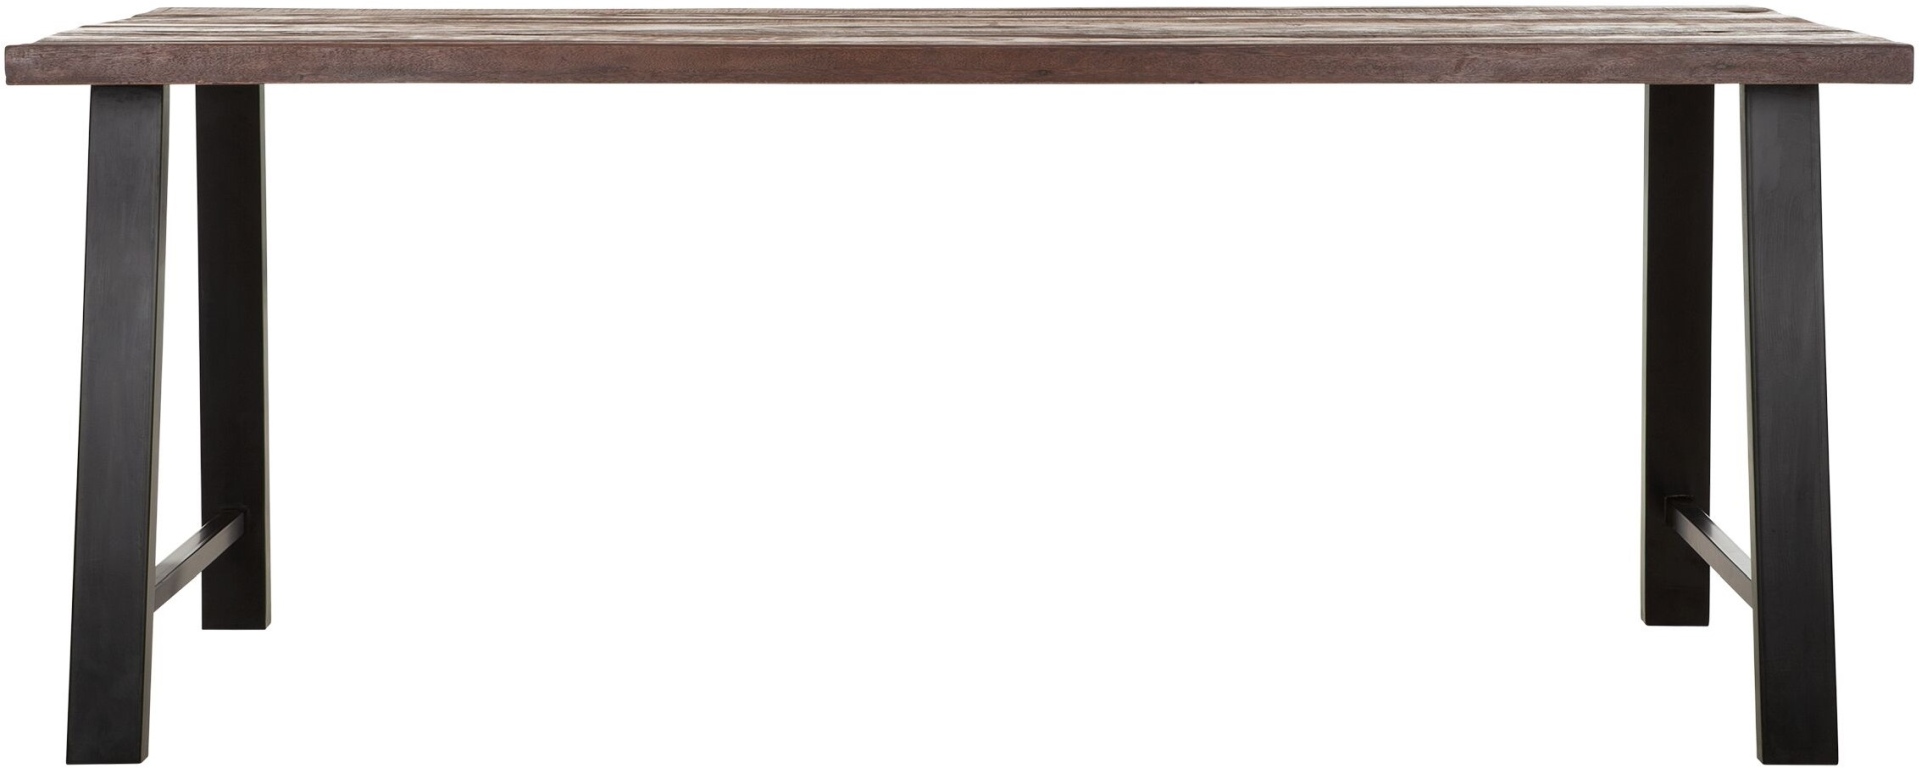 Der Esstisch Timber überzeugt mit seinem massivem aber auch modernem Design. Gefertigt wurde es aus verschiedenen Holzarten, welche einen natürlichen Farbton besitzen. Der Esstisch besitzt eine Länge von 200 cm.